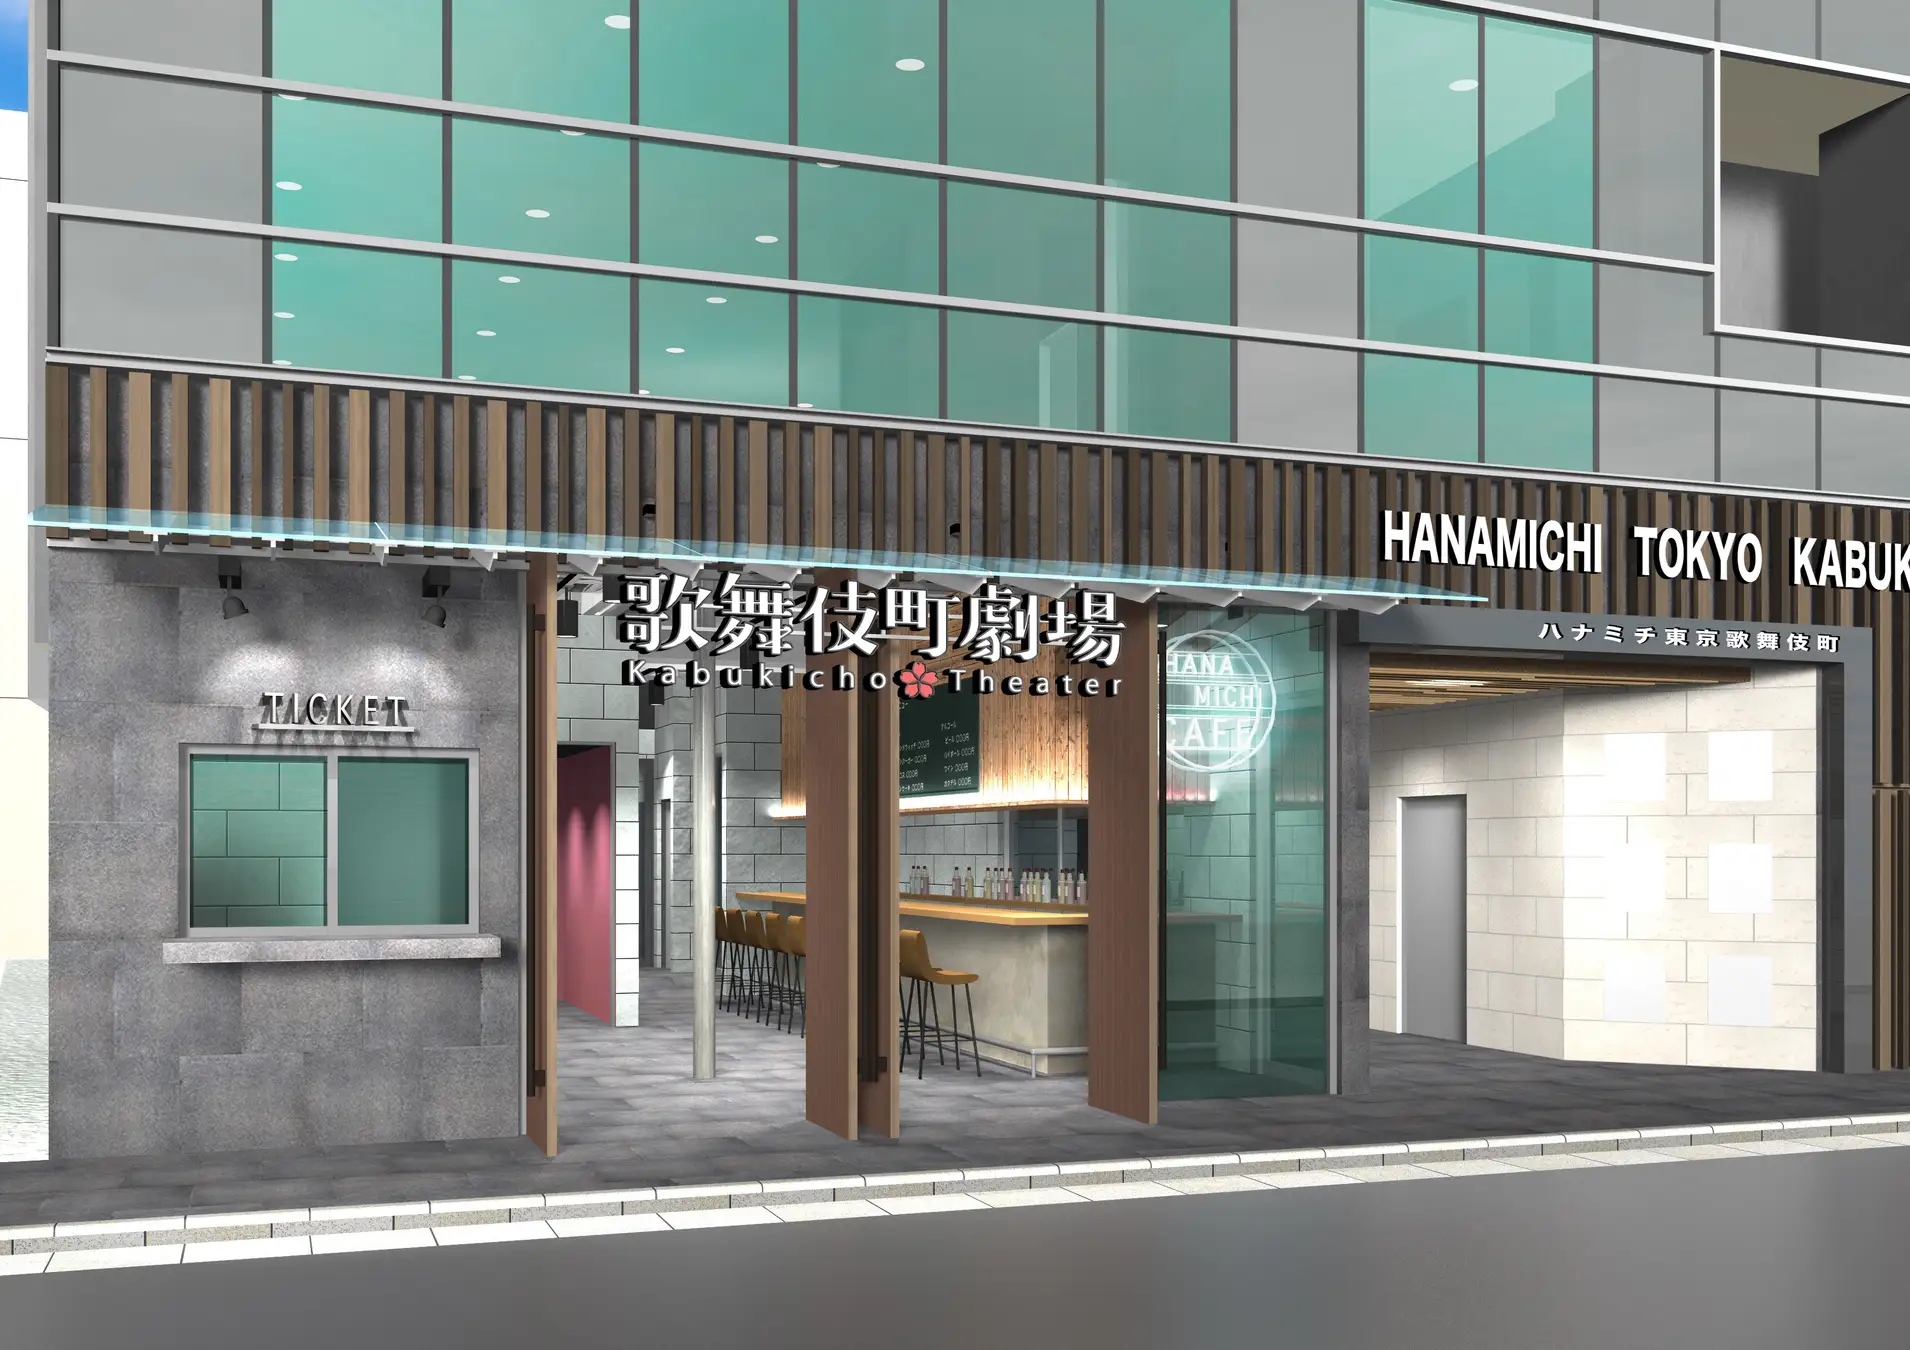 新商業ビル「ハナミチ東京 歌舞伎町」地下に、新世代大衆演劇場「歌舞伎町劇場」がオープンします。